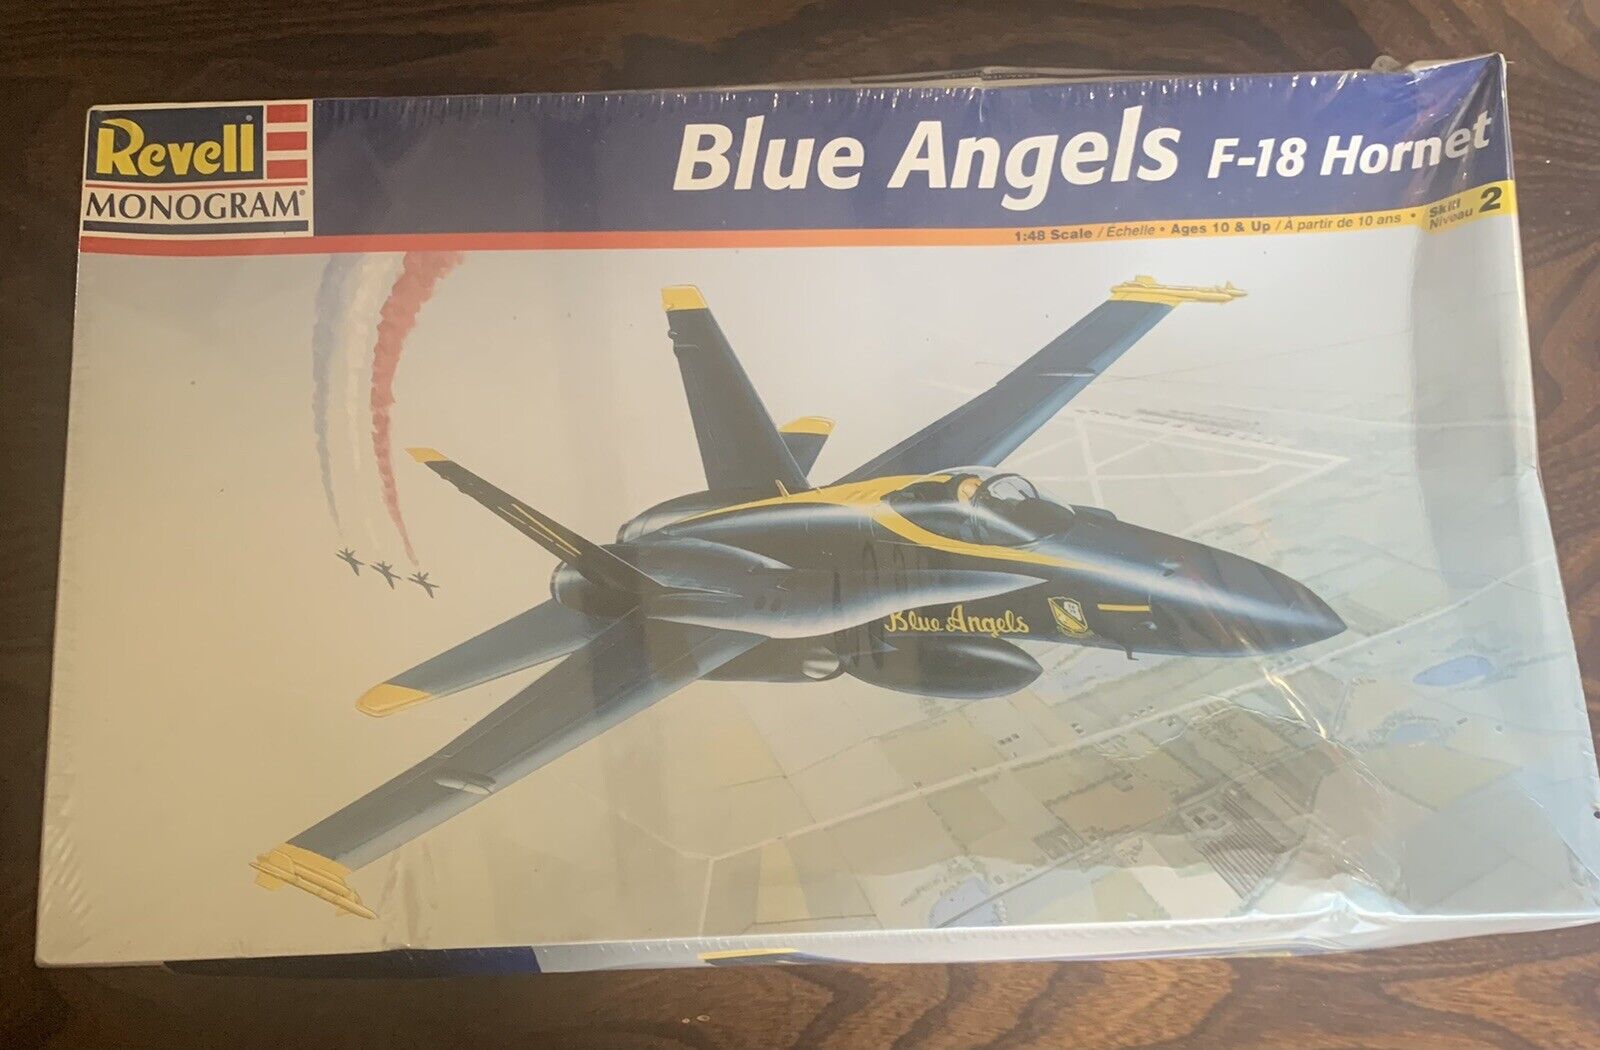 Revell, Blue angrls F-18 hornet  $39.99